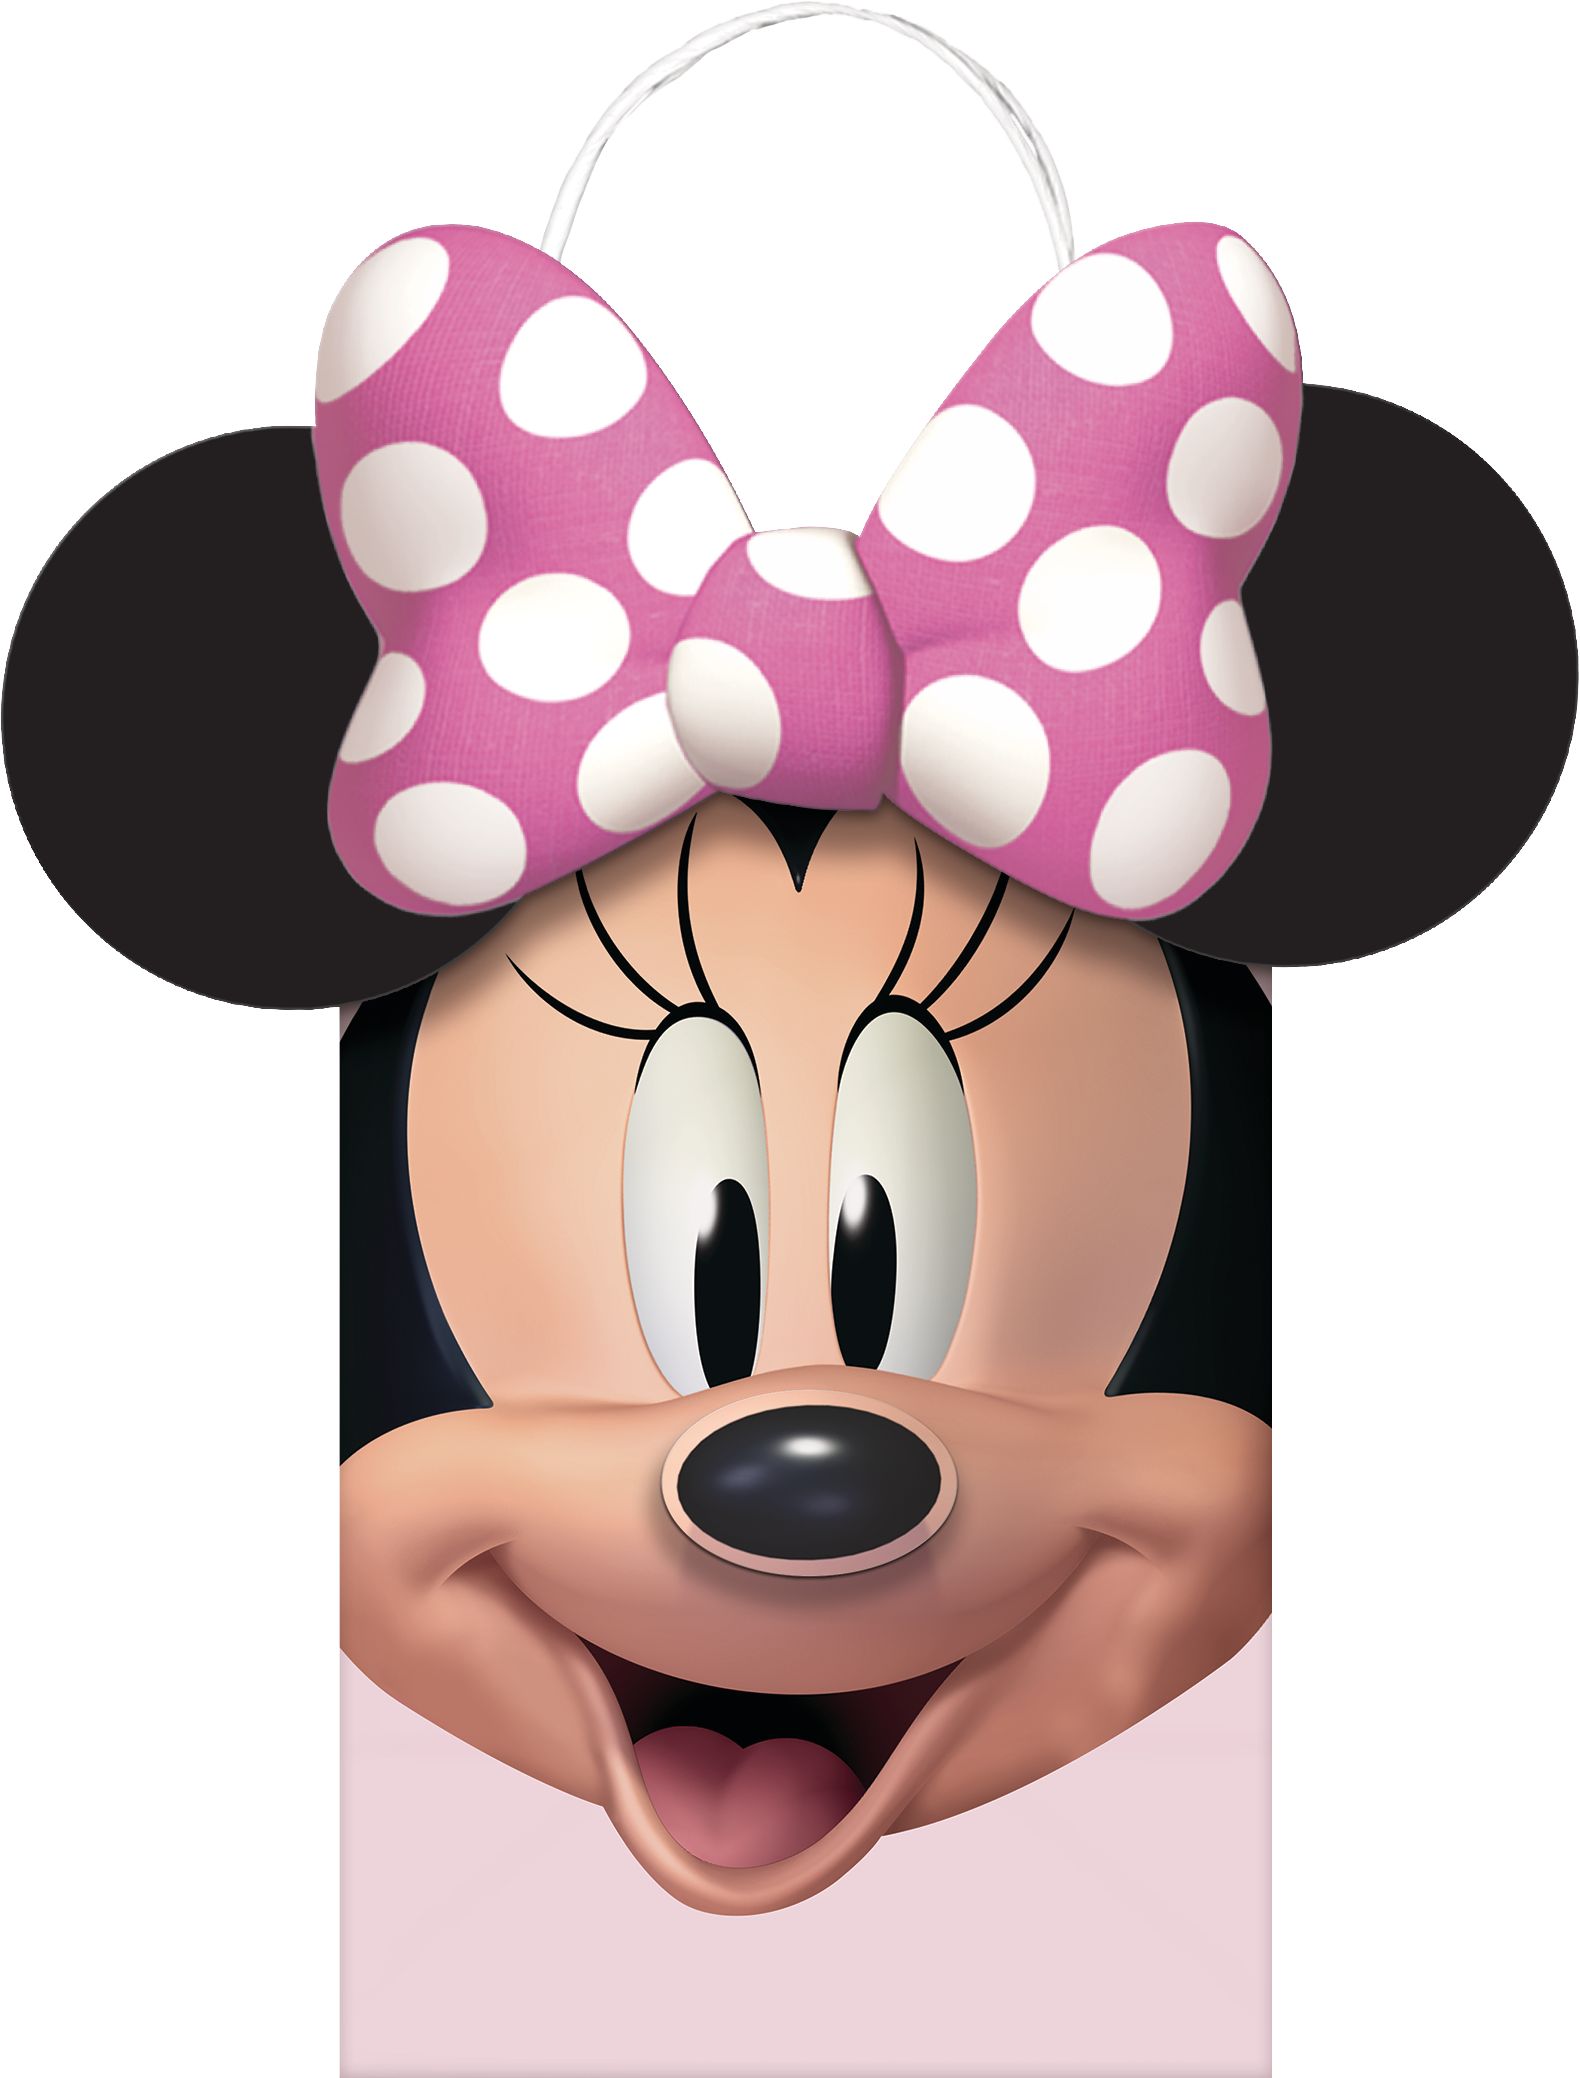 Disney Minnie Mouse couverture pour enfants 40 x 50 pouces